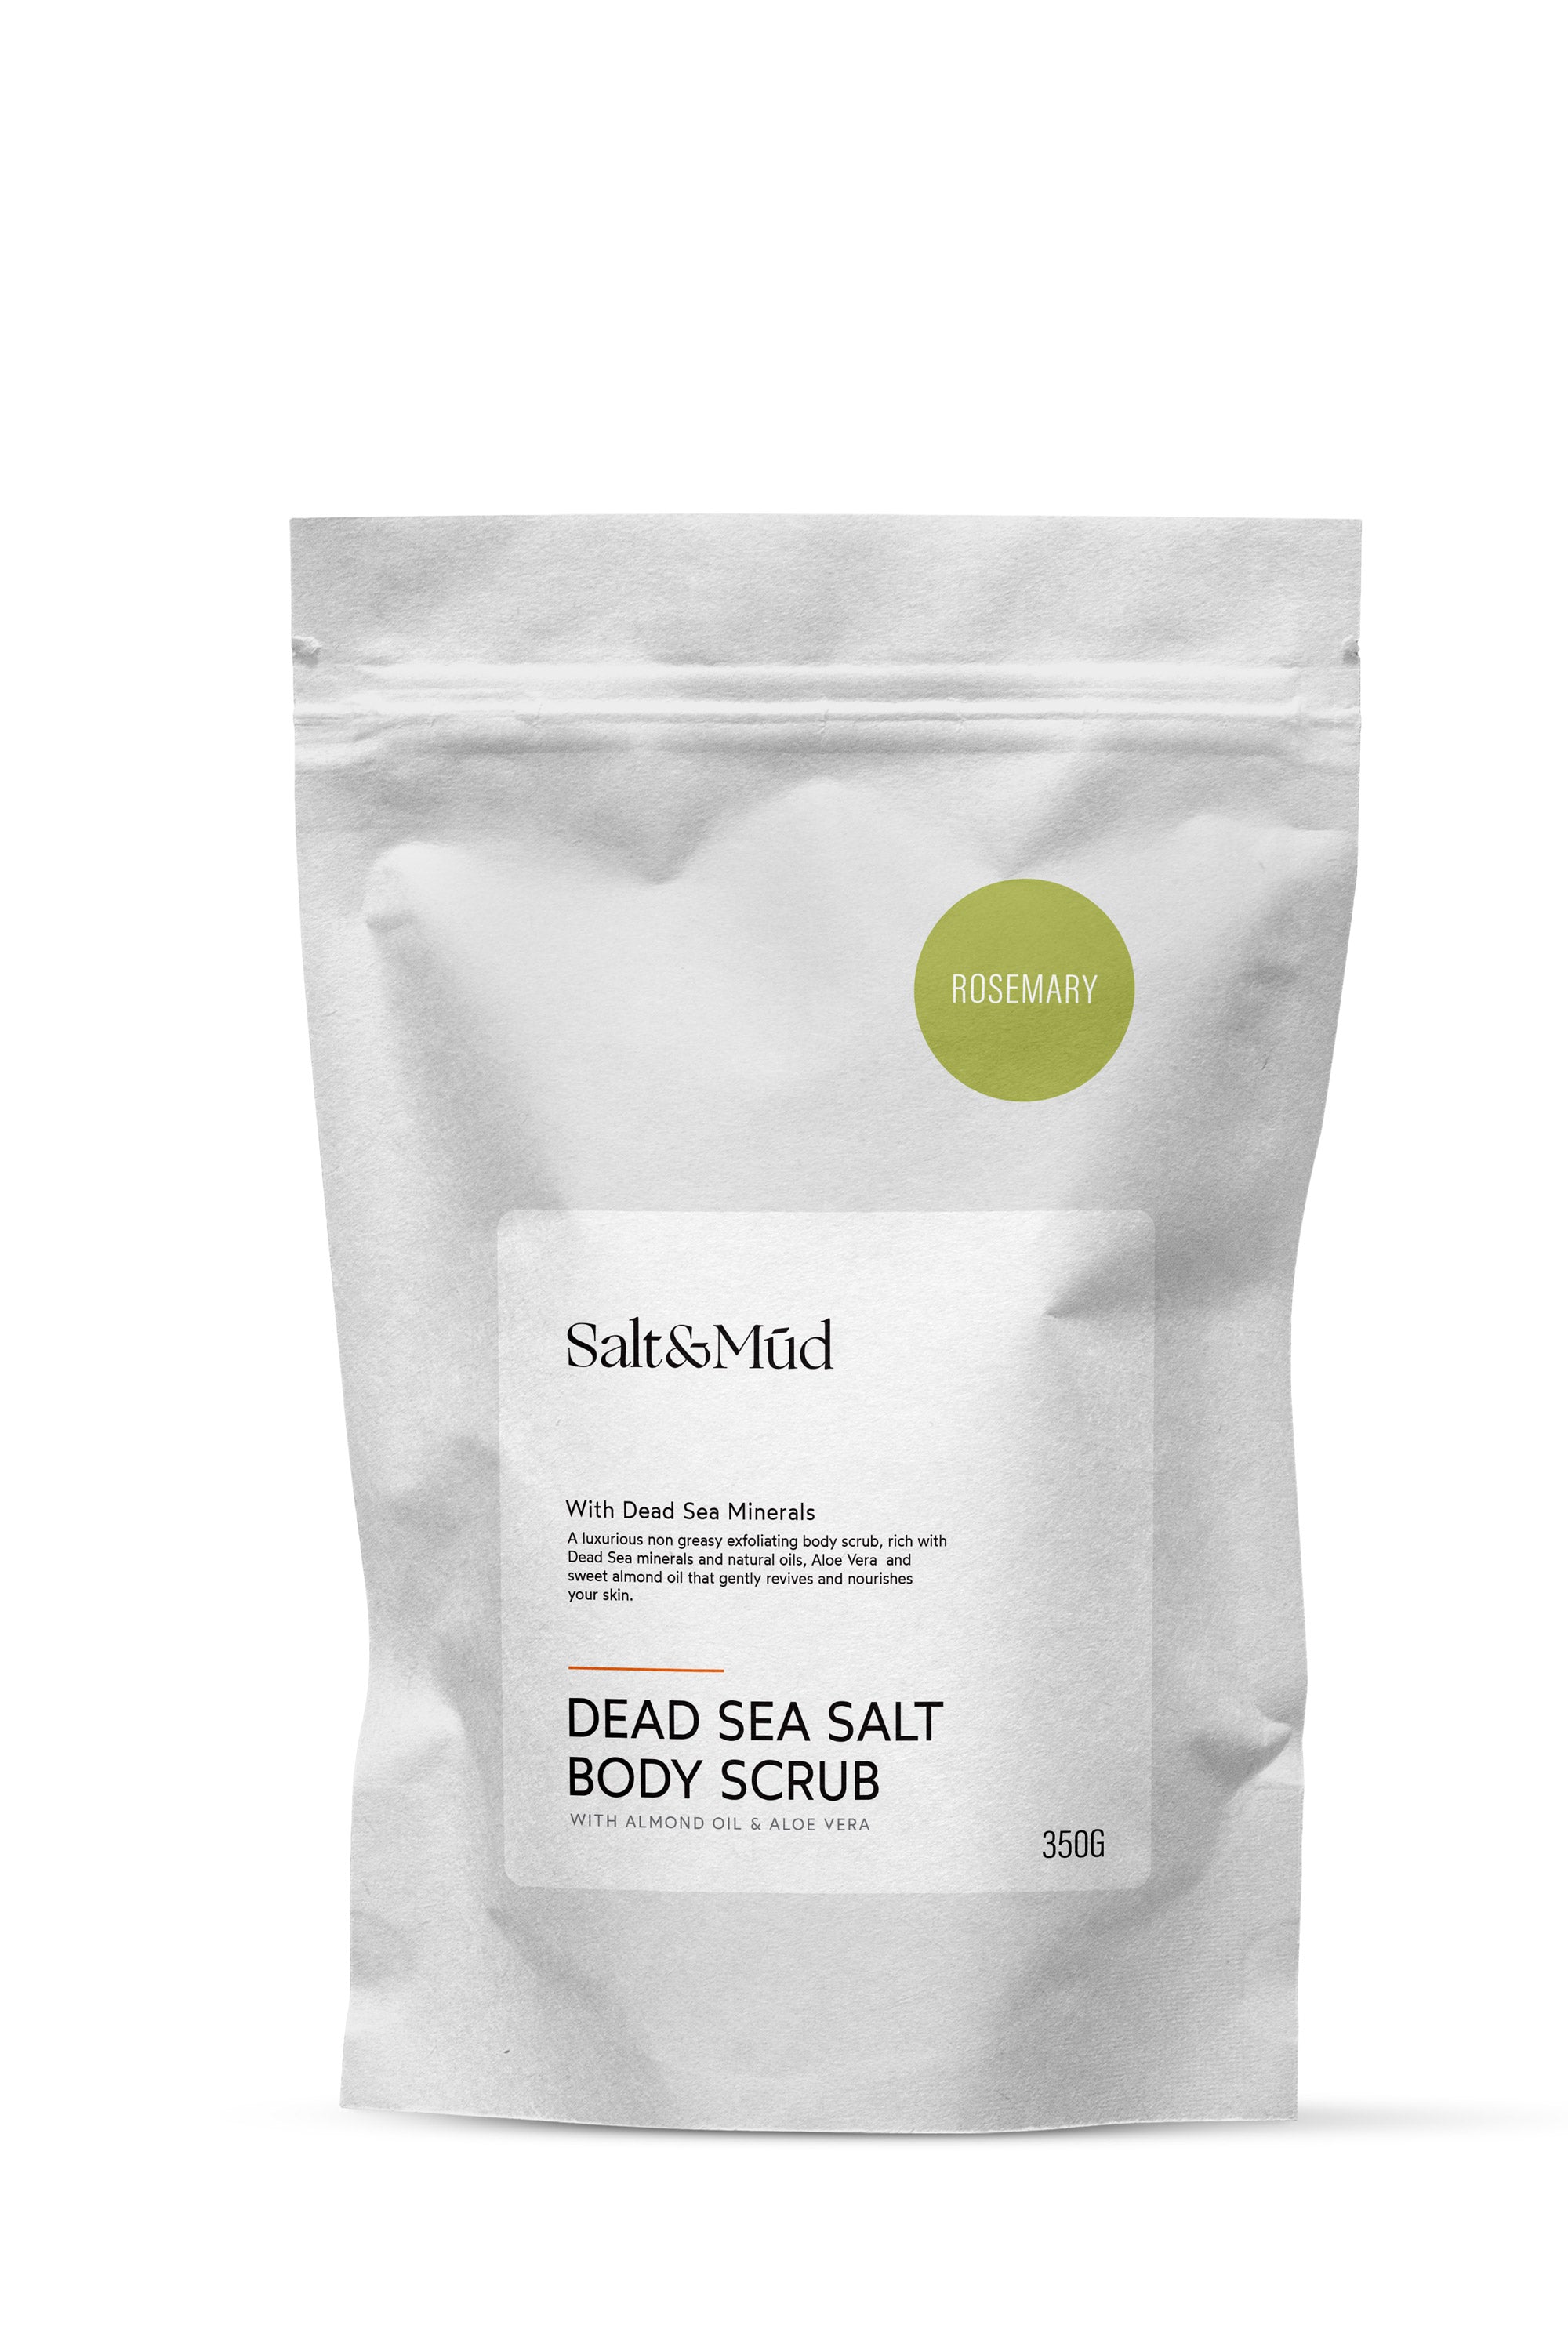 Dead Sea Salt Body Scrub Rosemary 350G